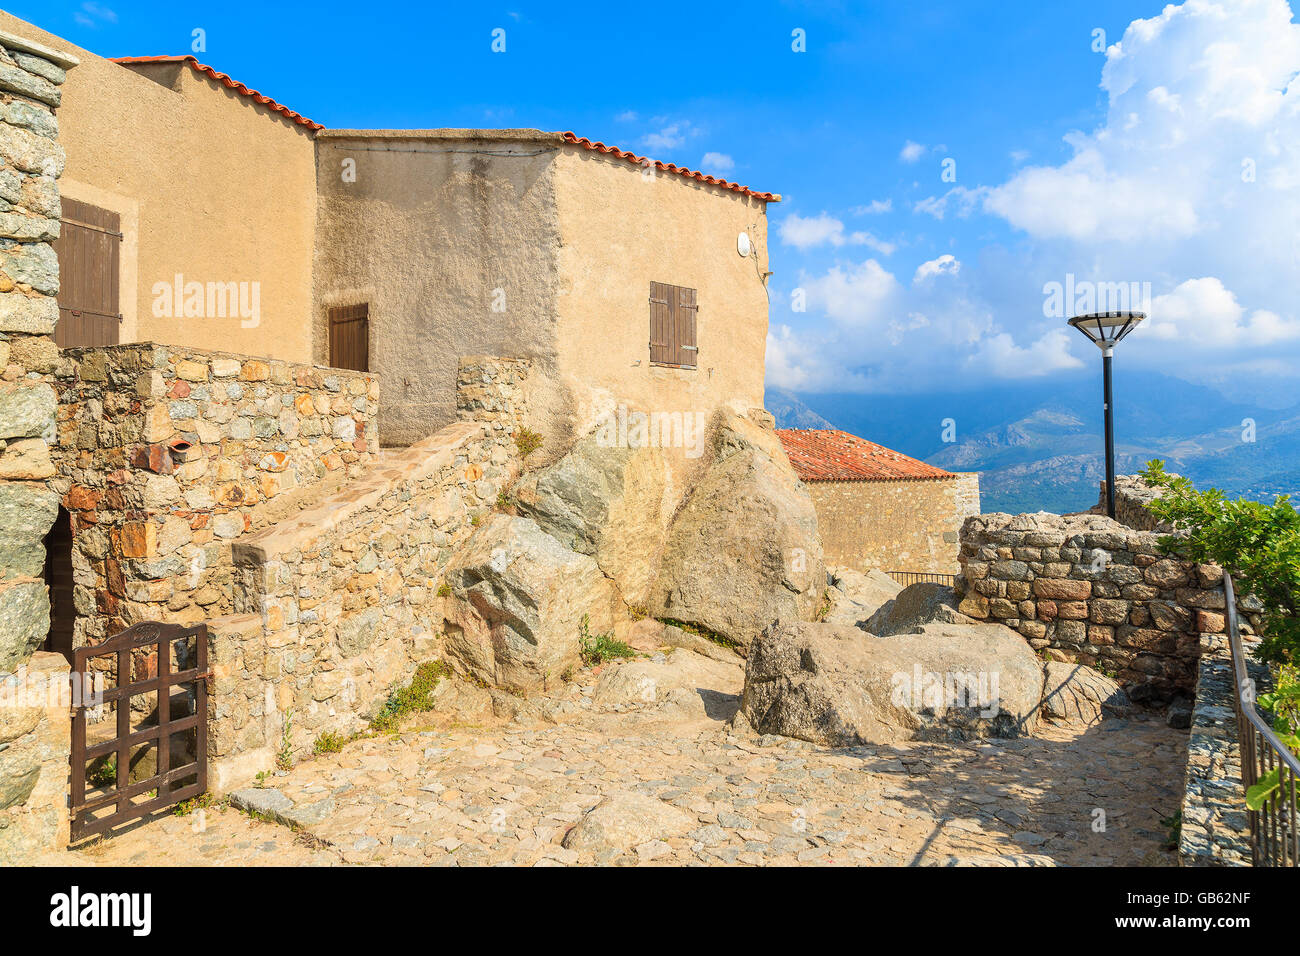 Vieilles maisons typiquement corse dans petit village de Sant Antonino, Corse, France Banque D'Images